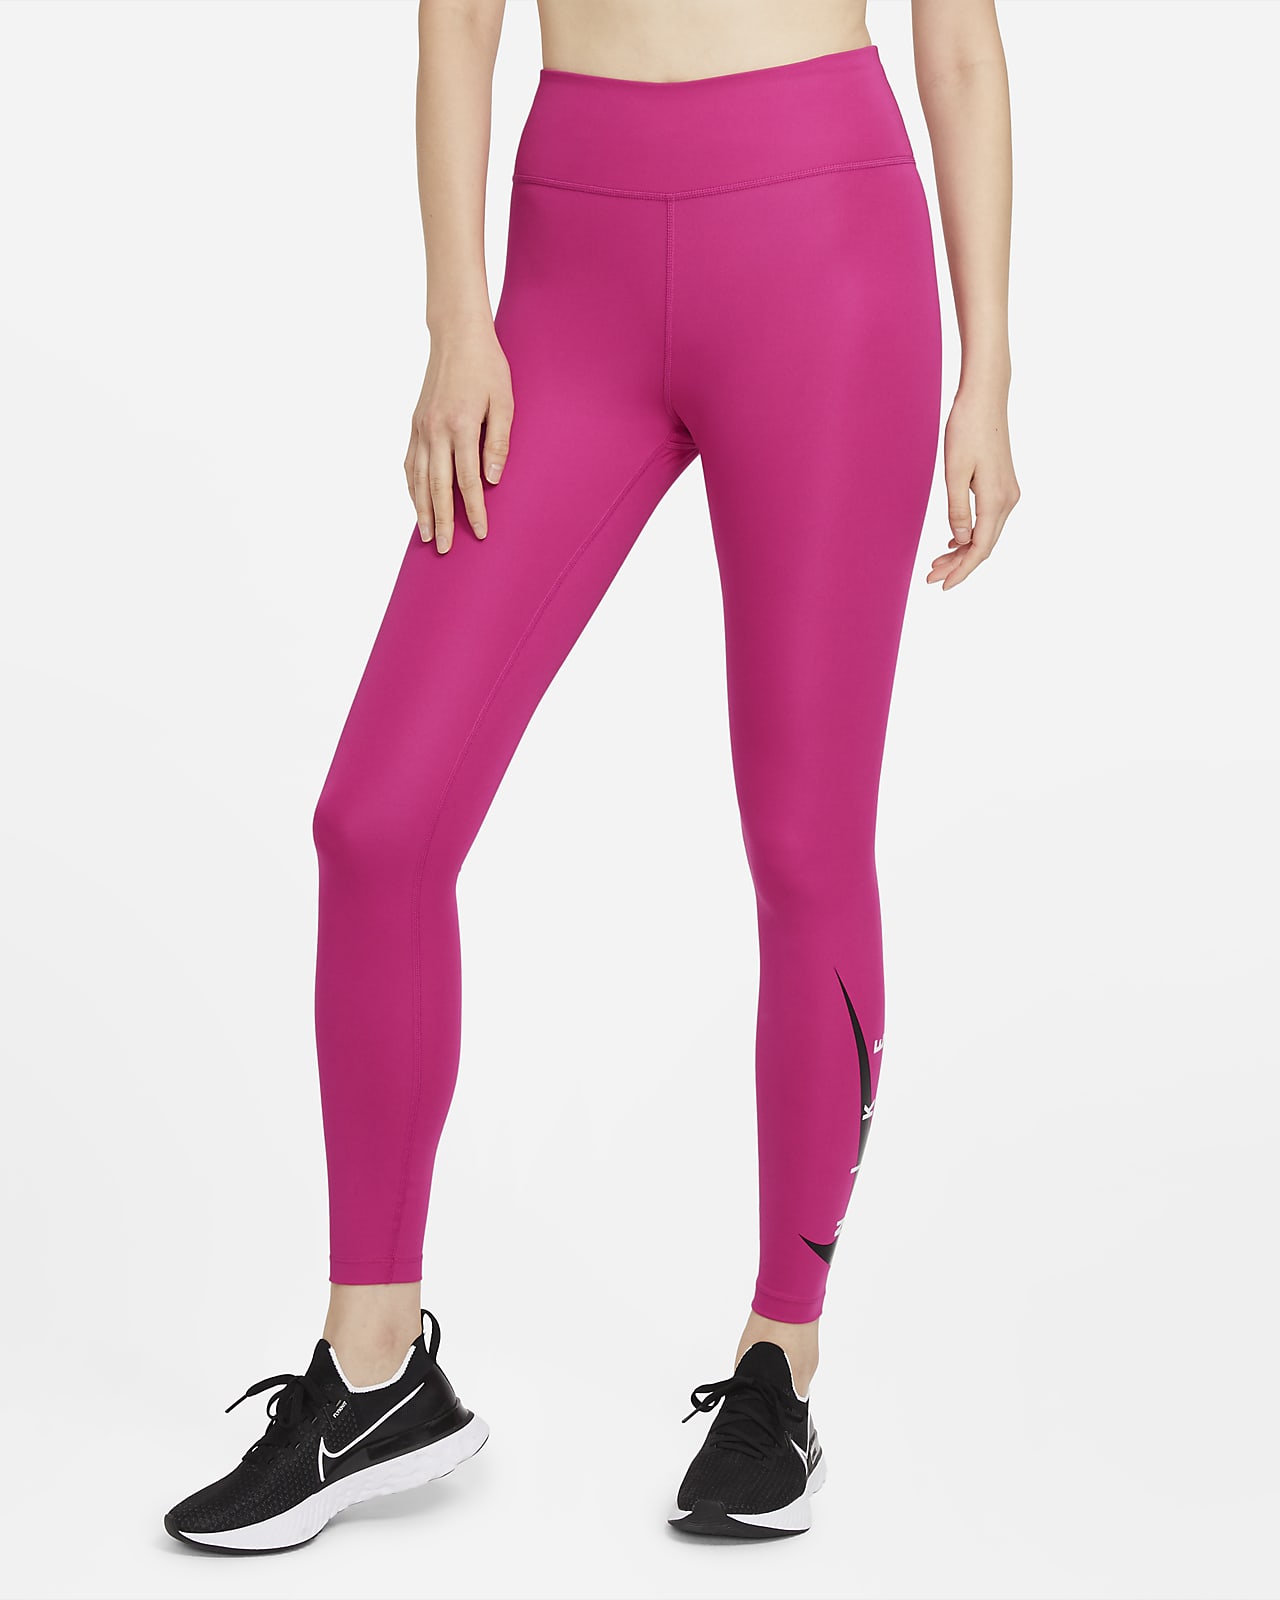 nike pink running leggings